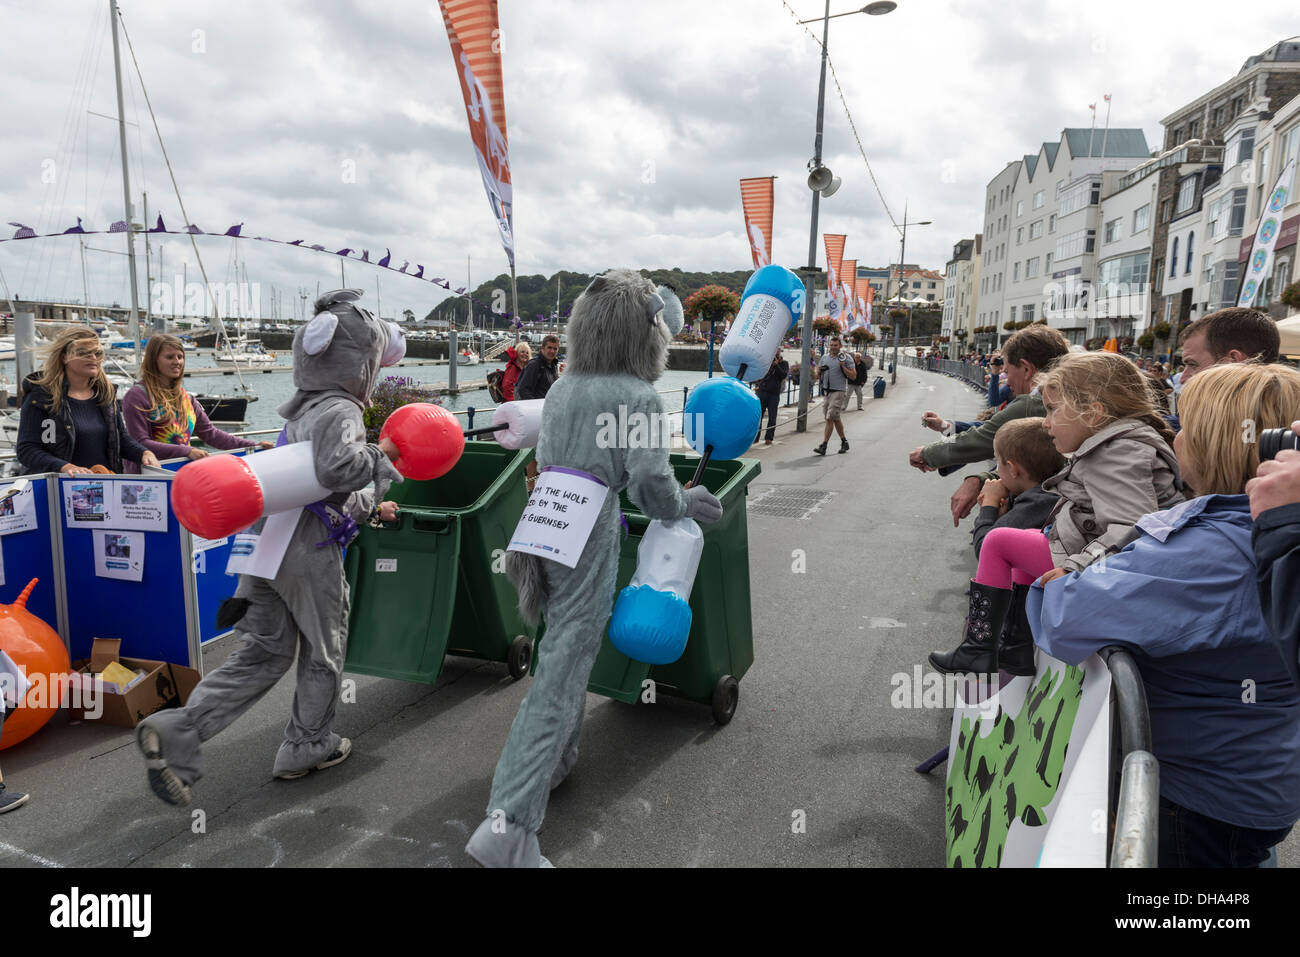 La charité fun run le long de St Peter Port waterfront. Guernsey, Channel Islands. Banque D'Images